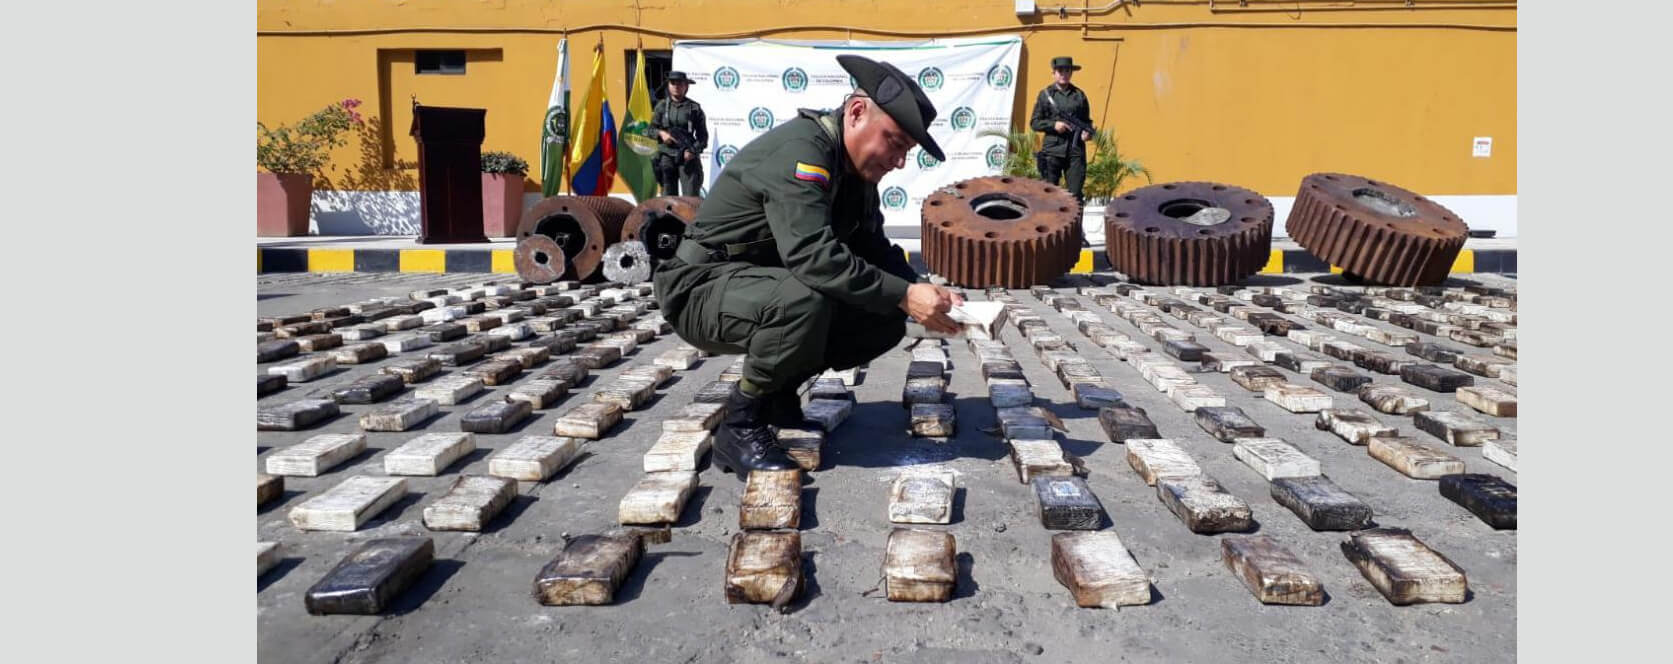 Incautan cargamento de droga valorado en $75.000 millones en el puerto de Barranquilla